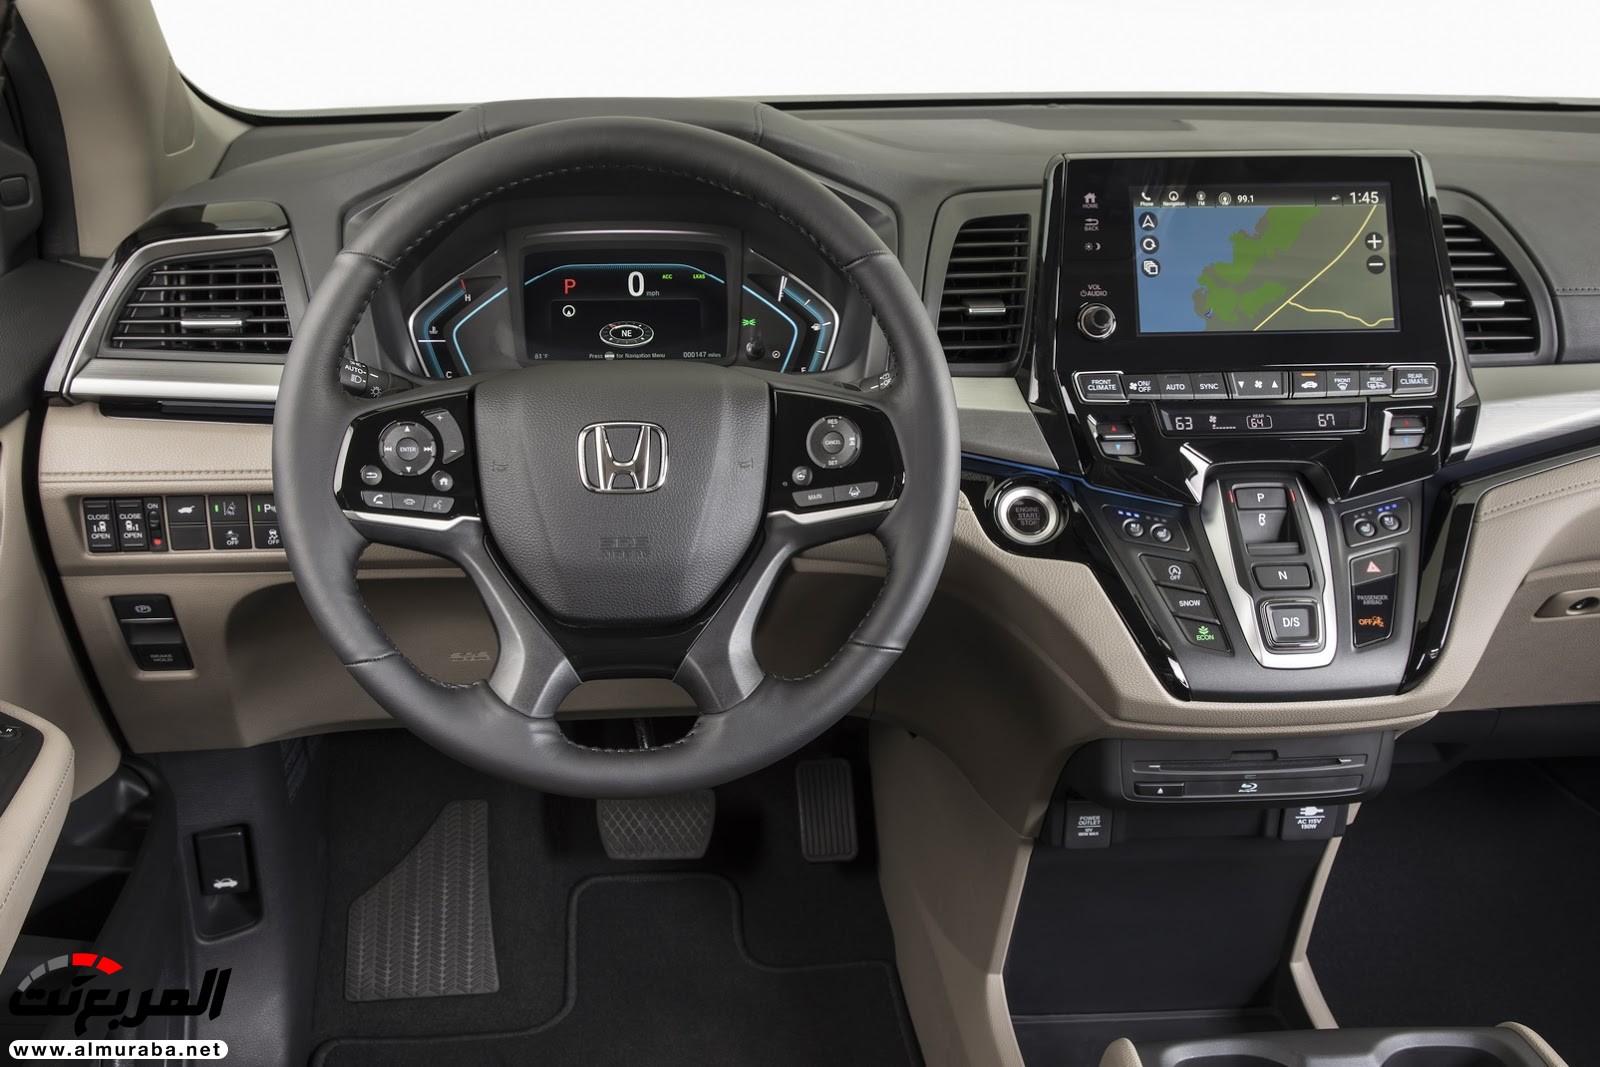 هوندا اوديسي 2018 تحصل على تقنيات جديدة وتحديثات خارجية وداخلية + صور وتقرير Honda Odyssey 19